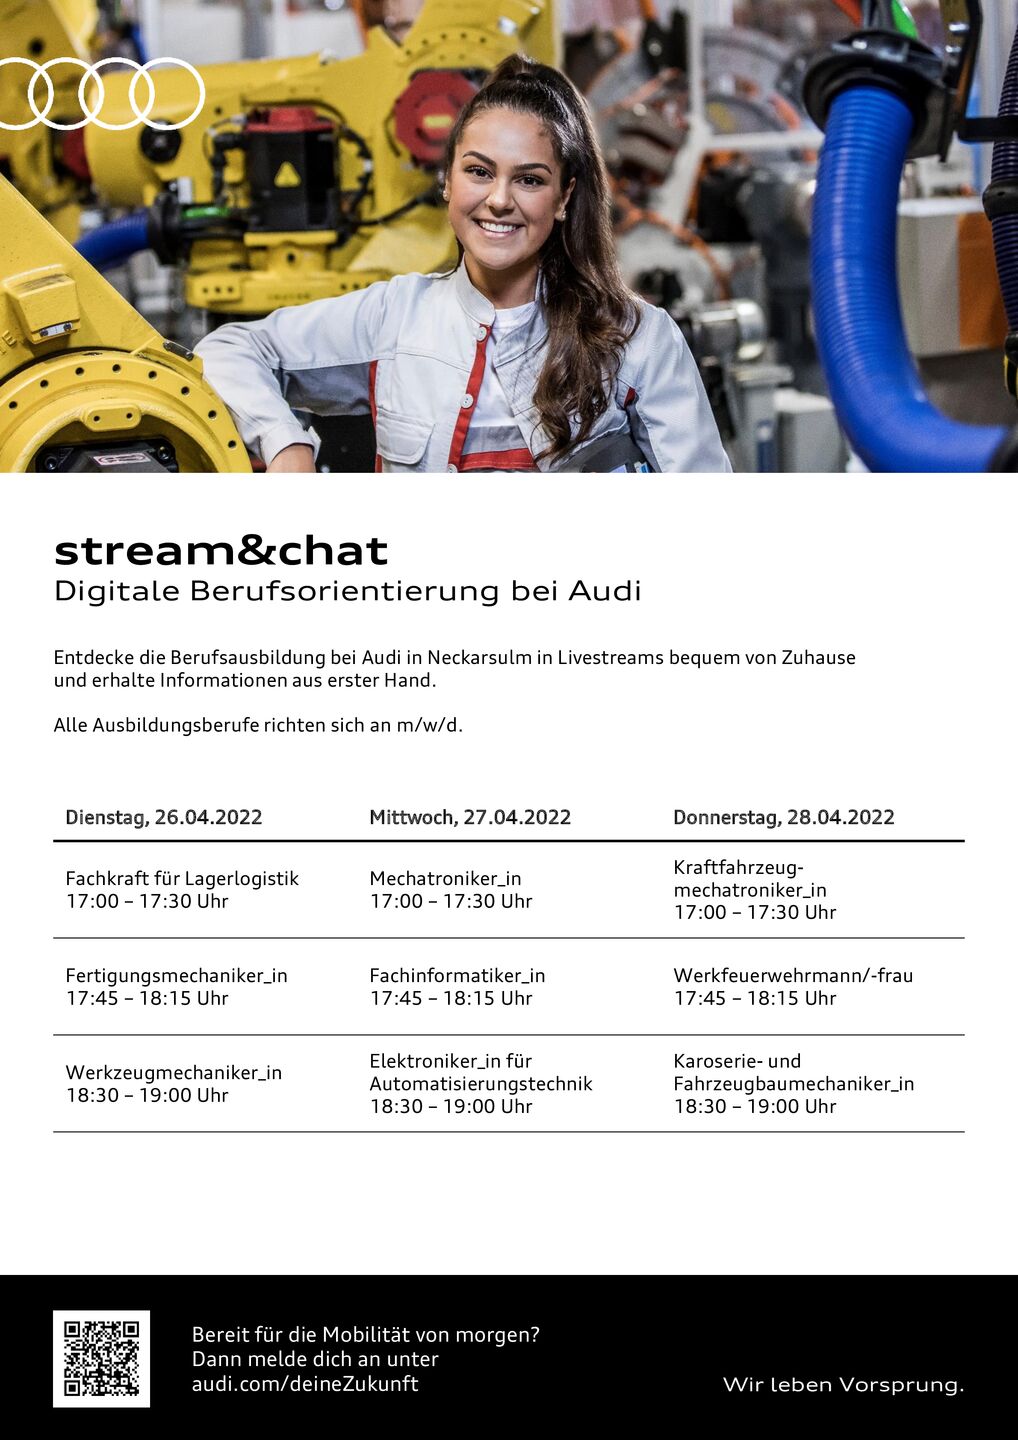 Termine zur digitalen Berufsorientierung bei Audi Neckarsulm